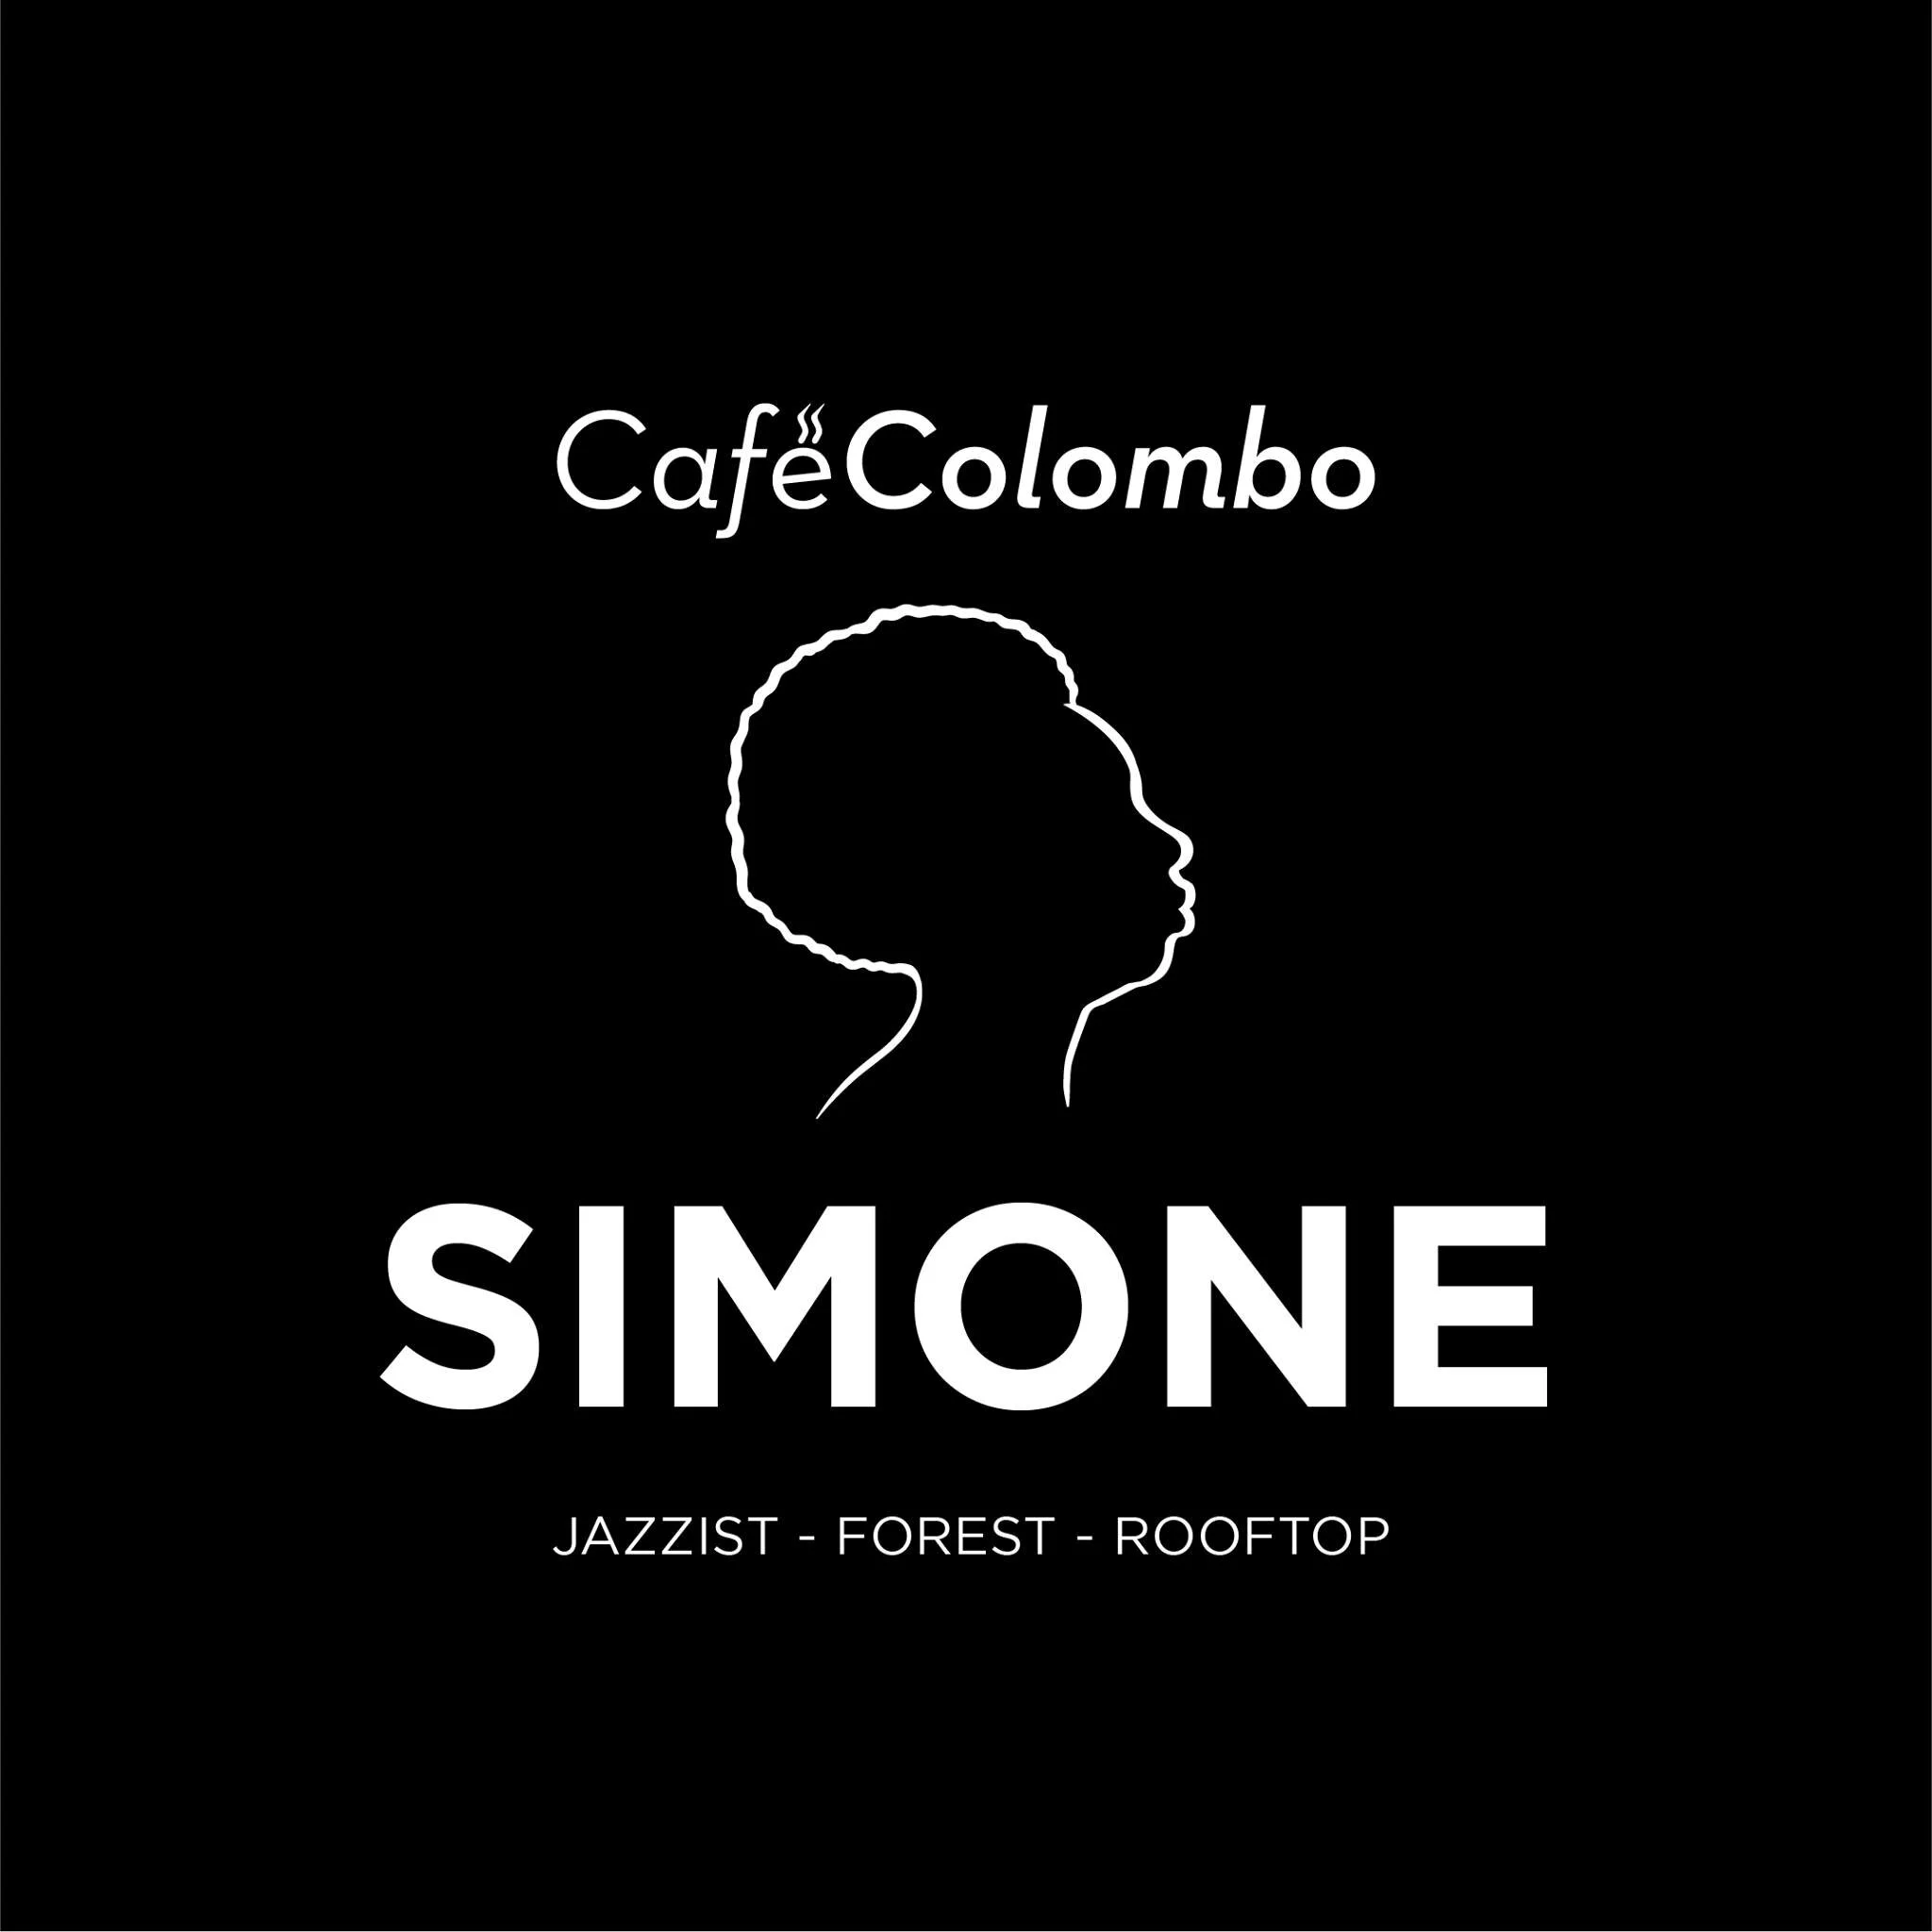 Restaurante-simone-cafe-colombo-25039